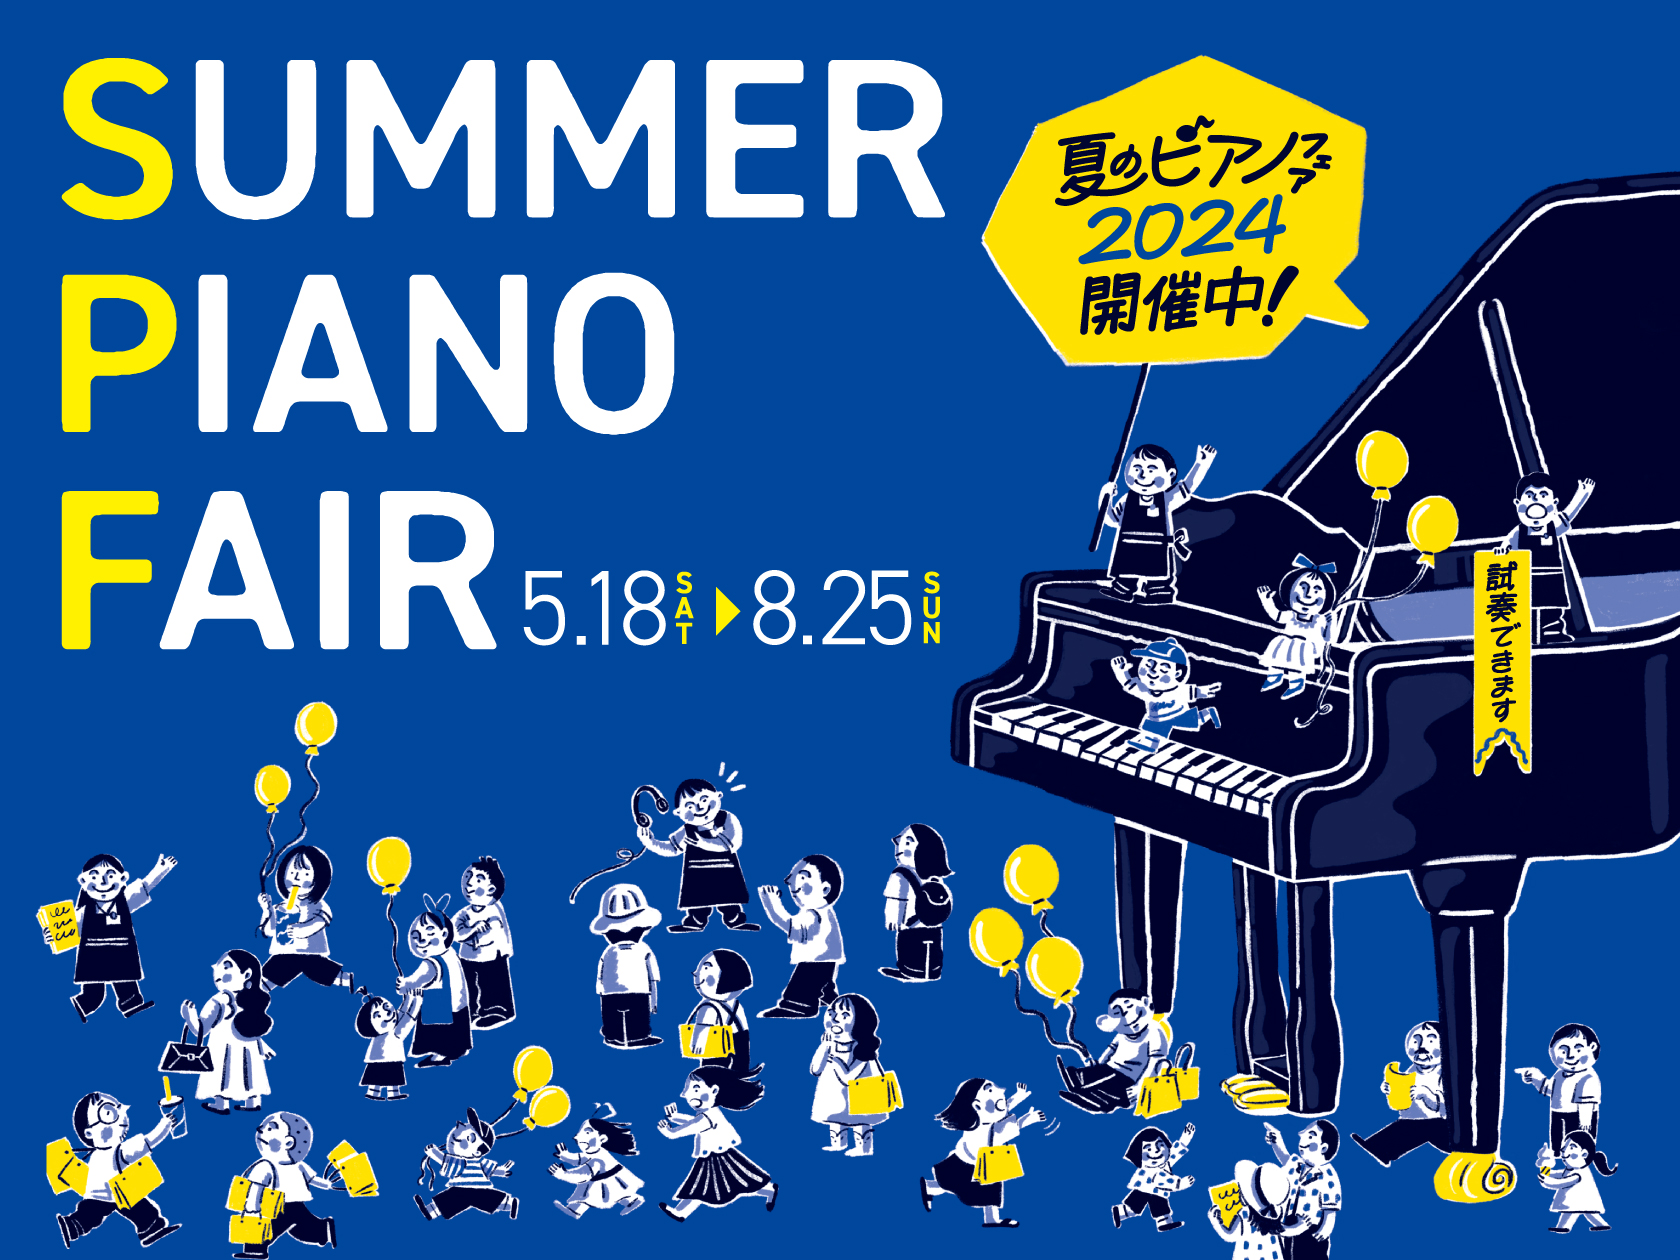 電子ピアノ・アップライトピアノ展示一覧】鳥取 米子、島根でピアノを 